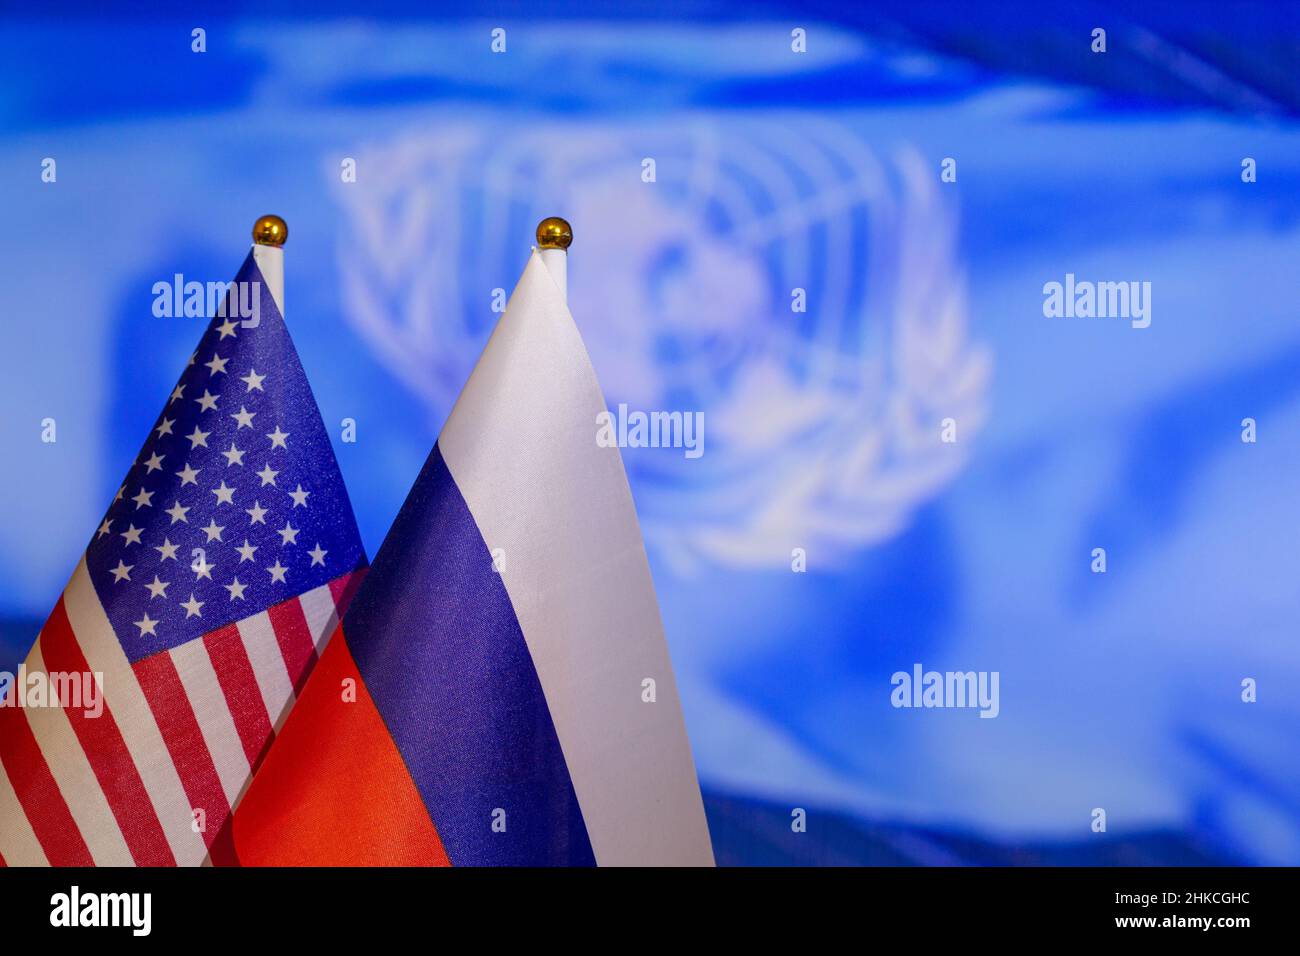 Die US-Flagge und die russische Flagge auf dem Hintergrund der UN. Flagge der USA, Flagge Russlands. Die Vereinigten Staaten von Amerika und die Russische Föderation Stockfoto